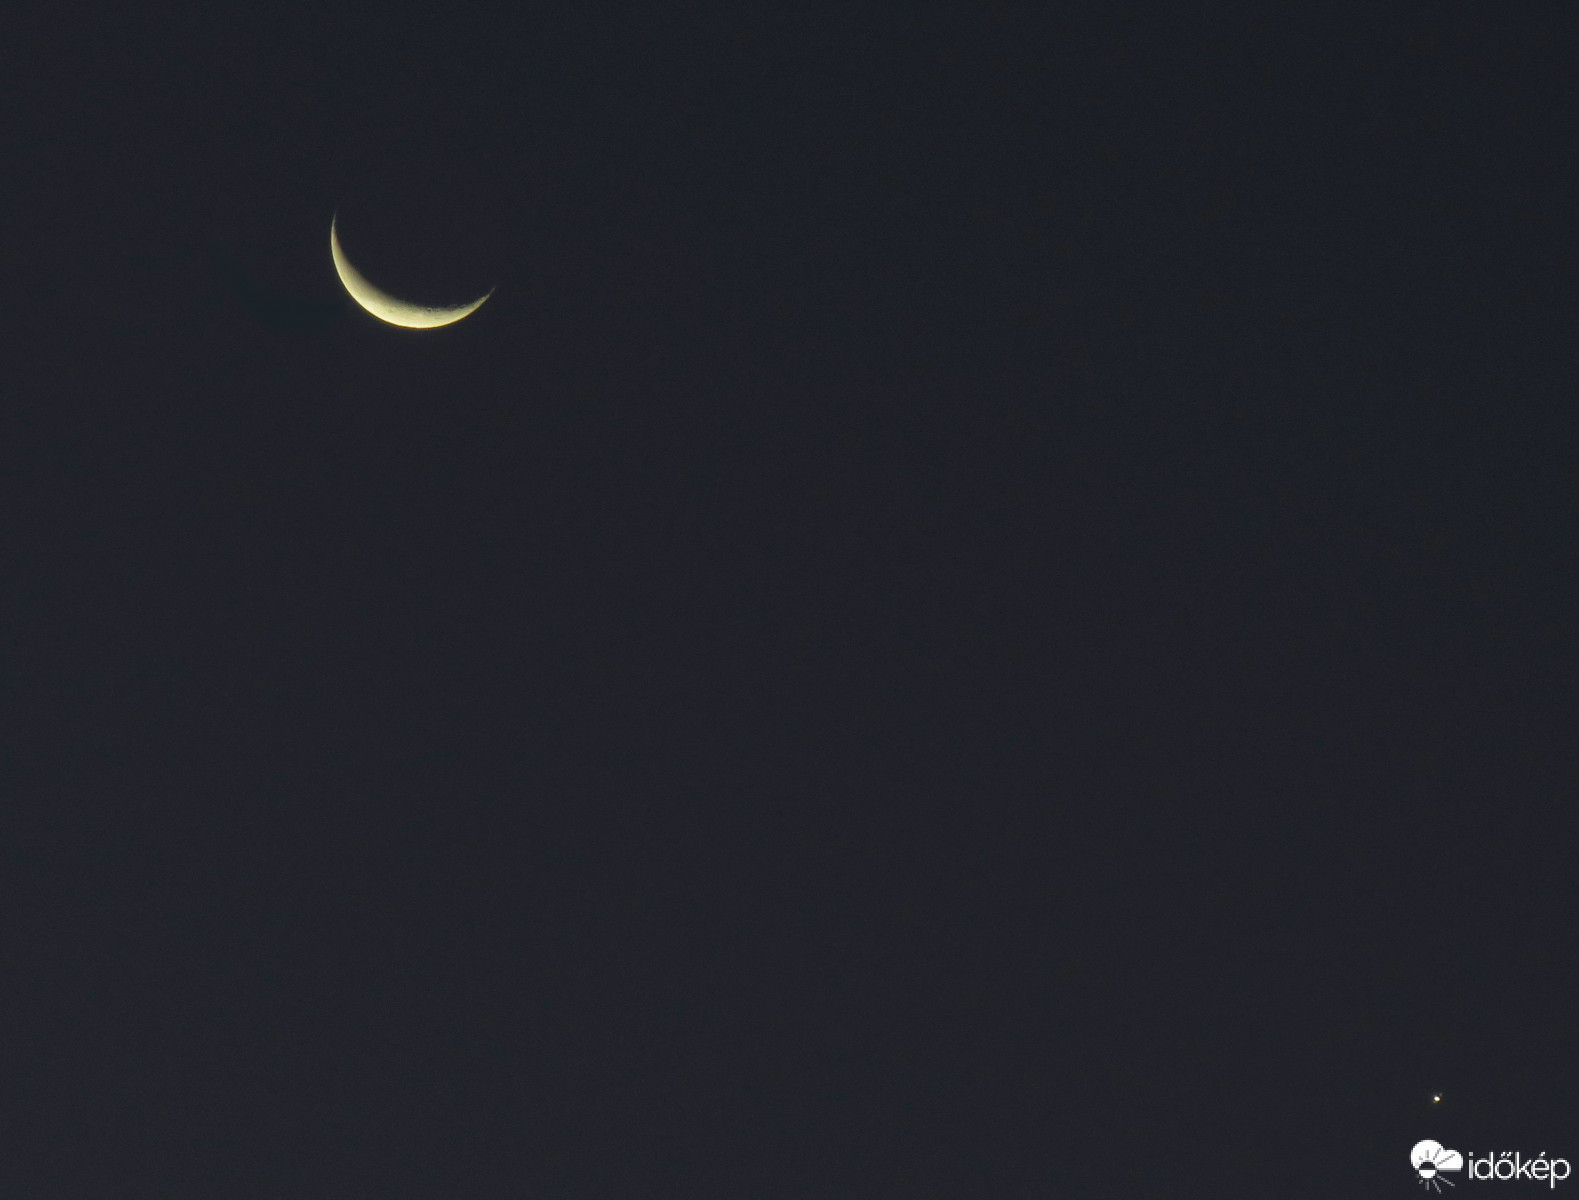 Hold és az Esthajnalcsillag